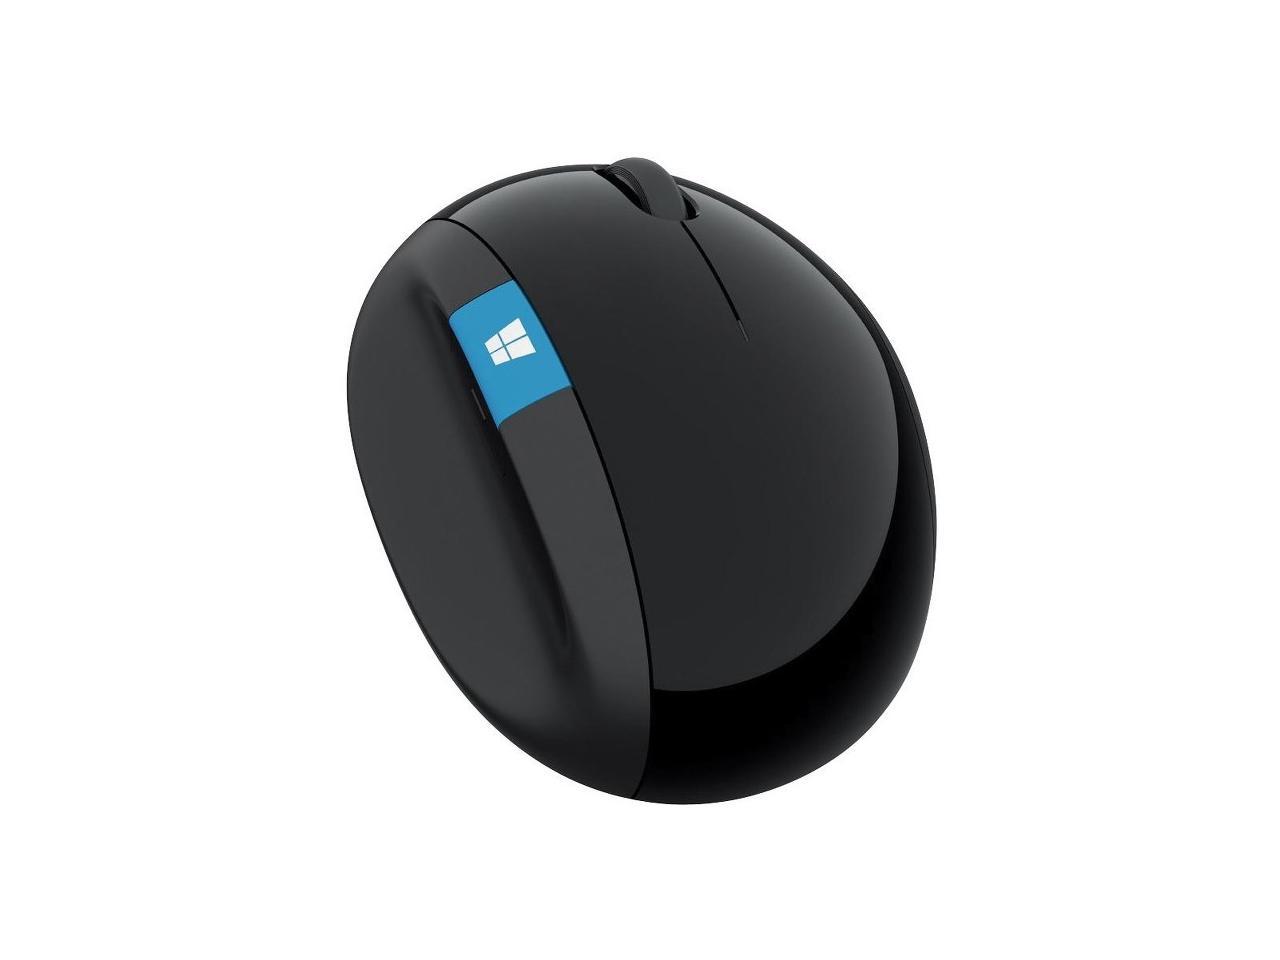 Microsoft Sculpt Ergonomic Mouse for Business - Newegg.com